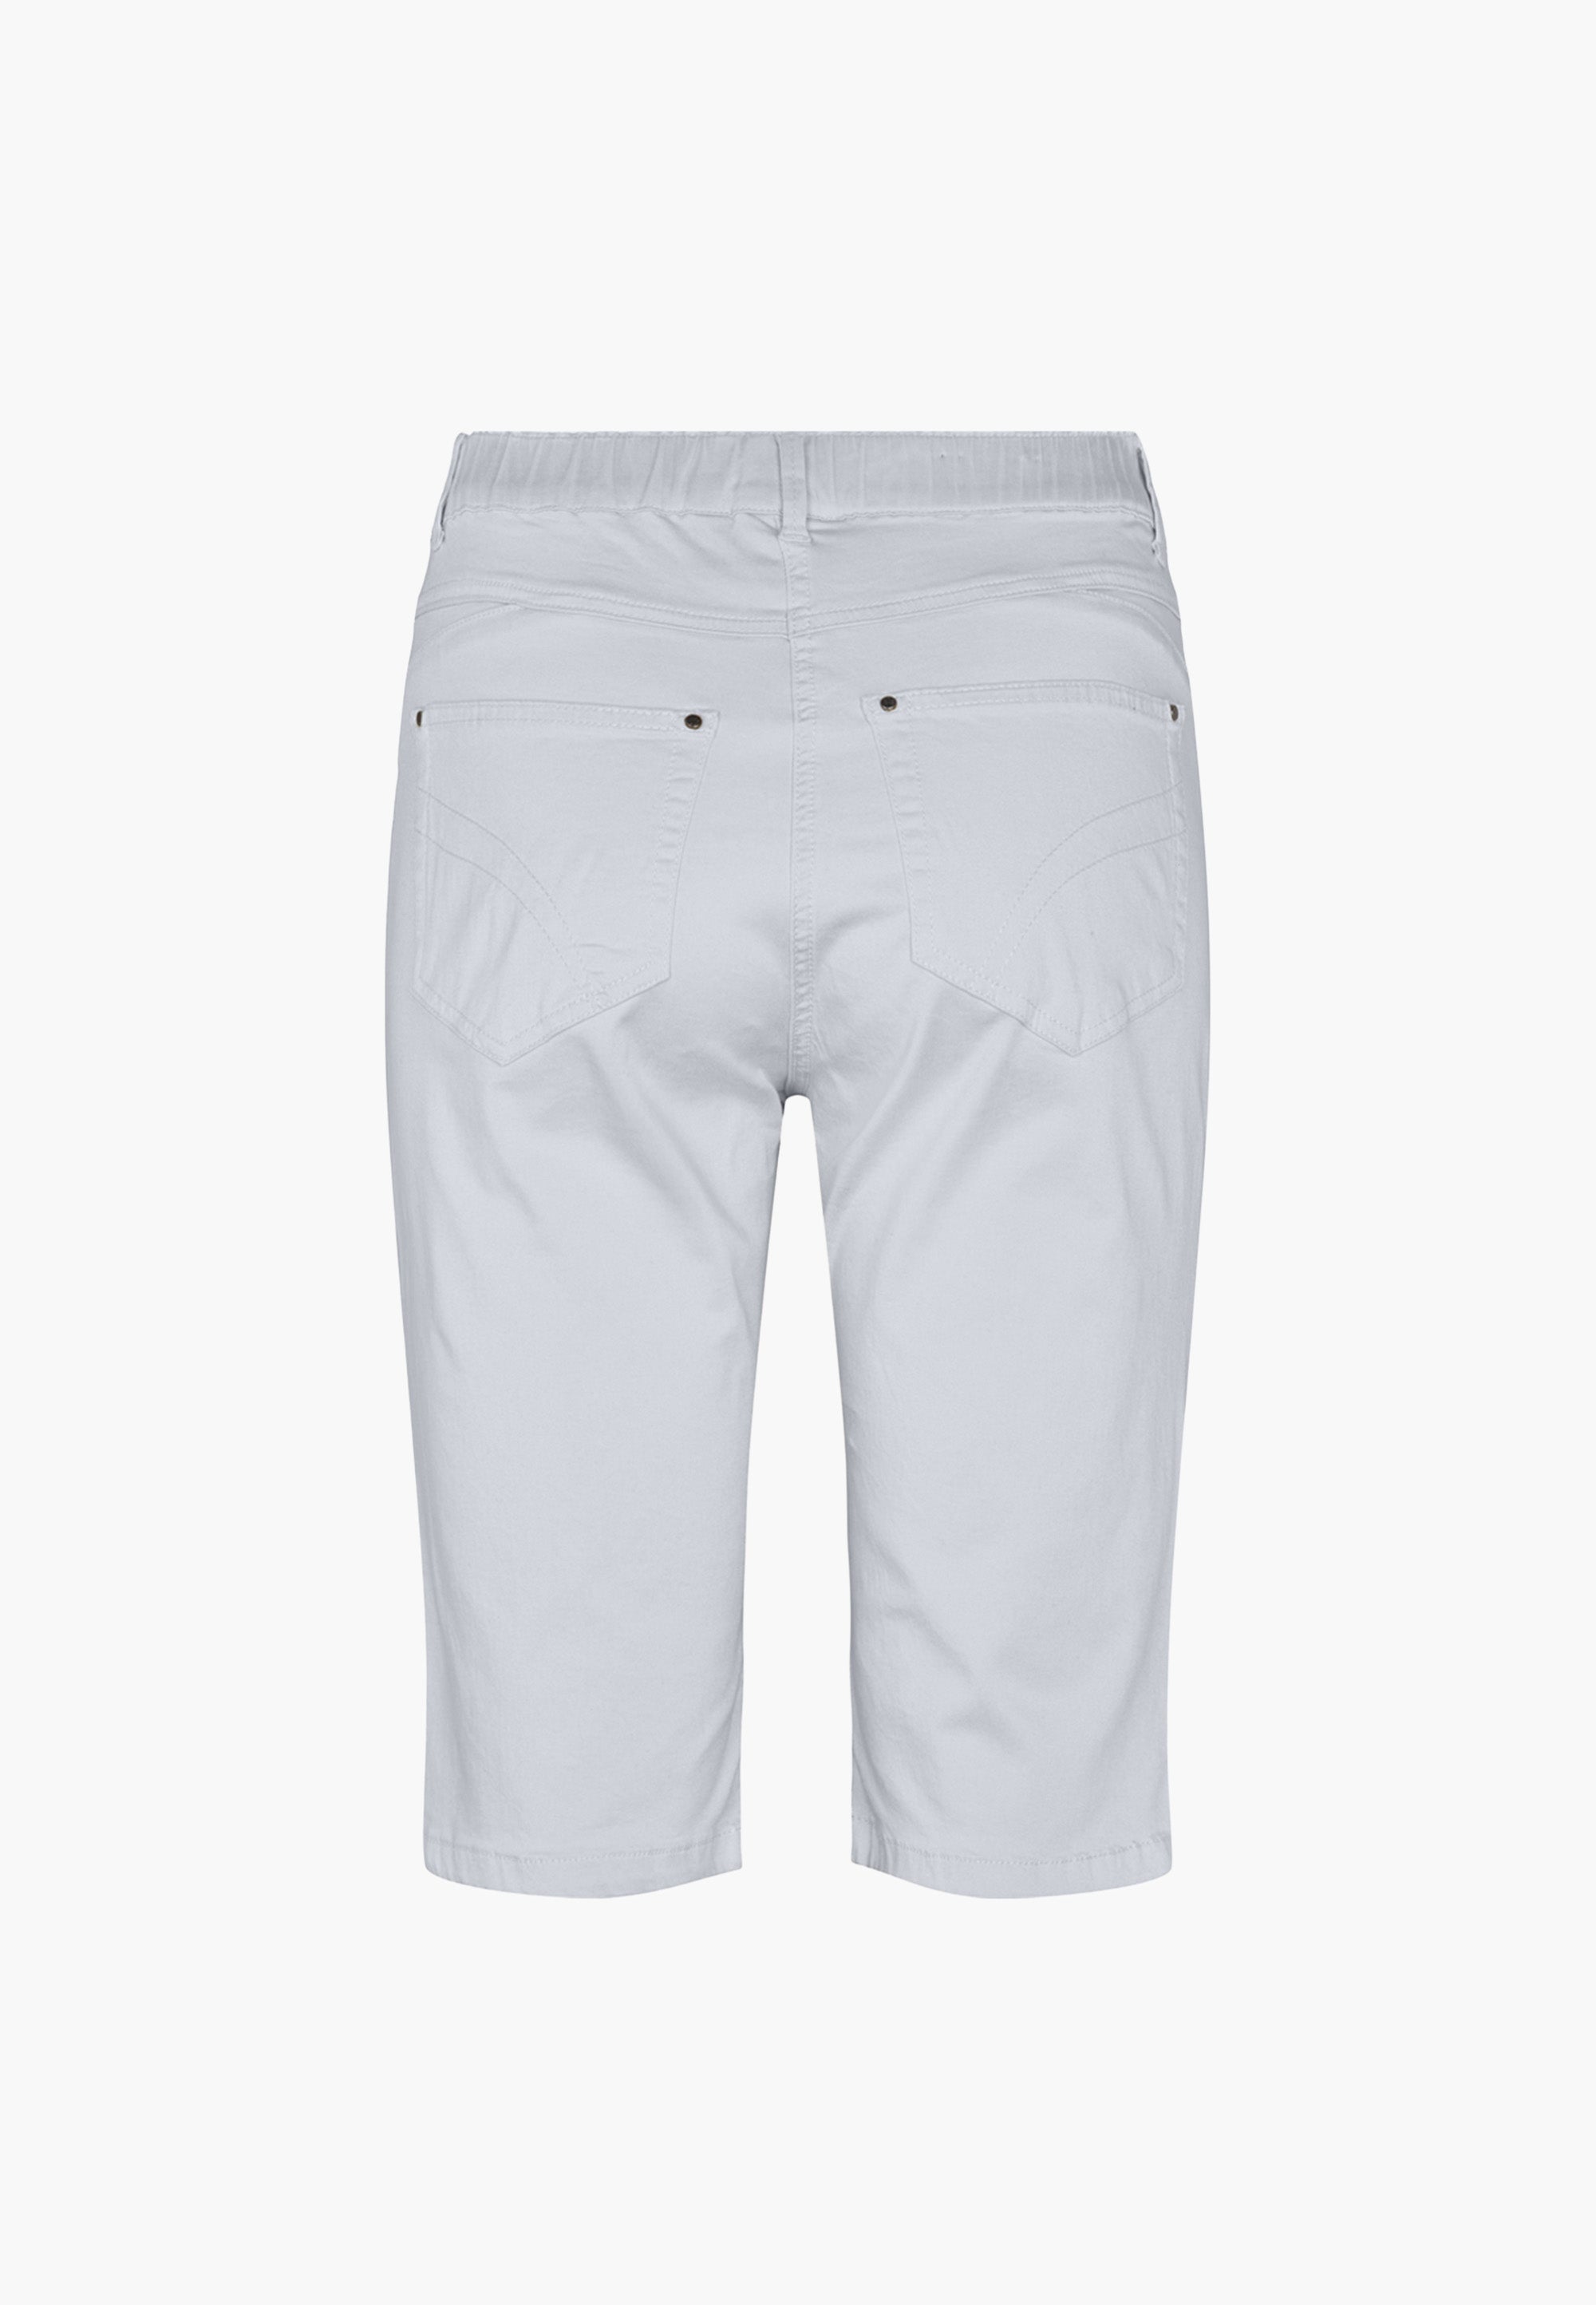 LAURIE Hannah Regular Shorts Trousers REGULAR 10122 White